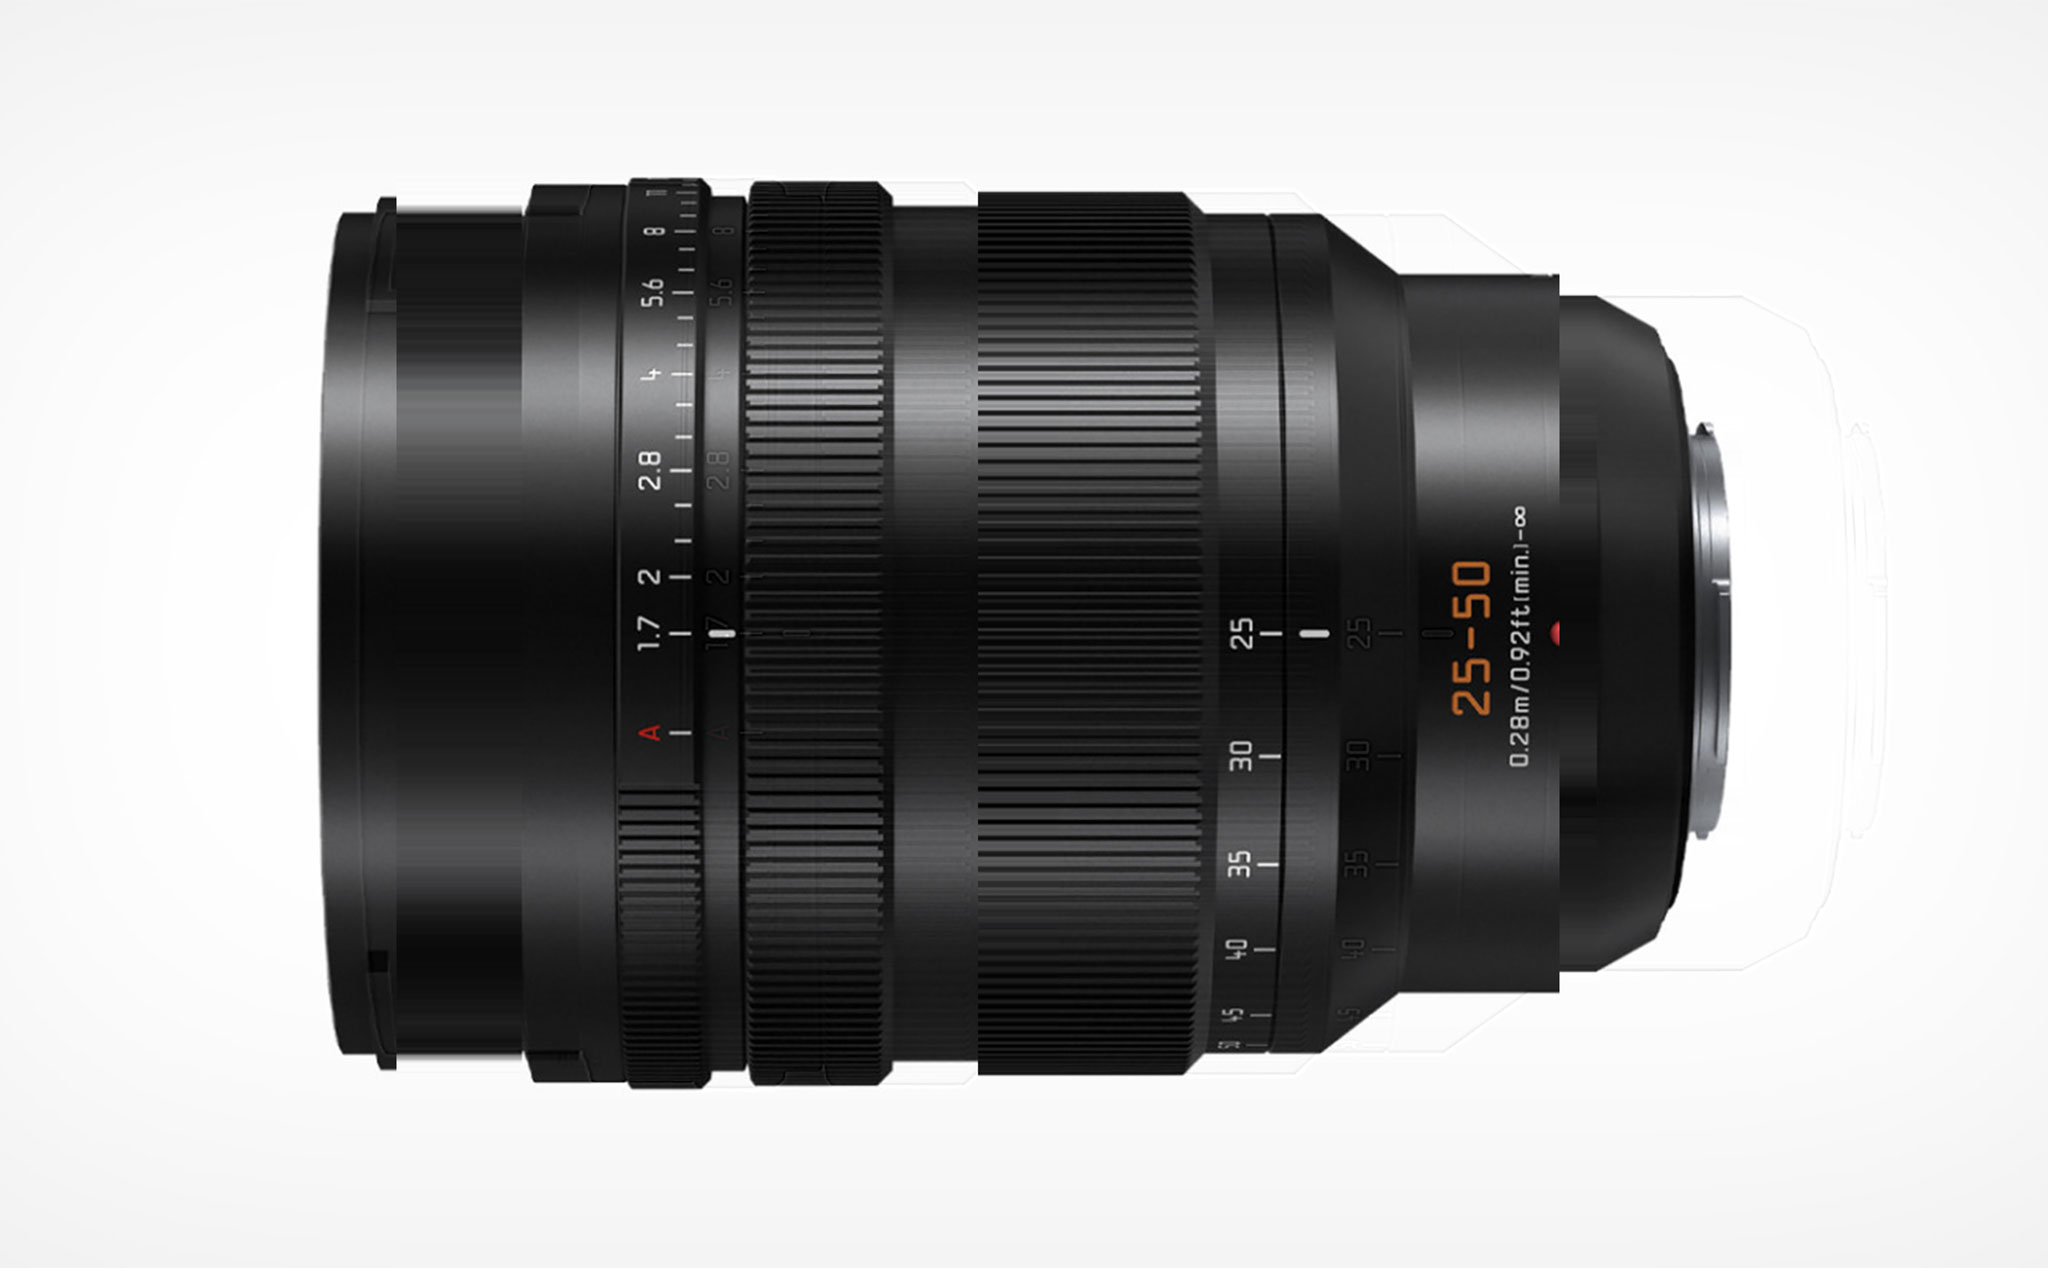 Panasonic ra mắt ống kính Leica DG Vario-Summilux 25-50mm f/1.7 dành cho máy ảnh cảm biến M43